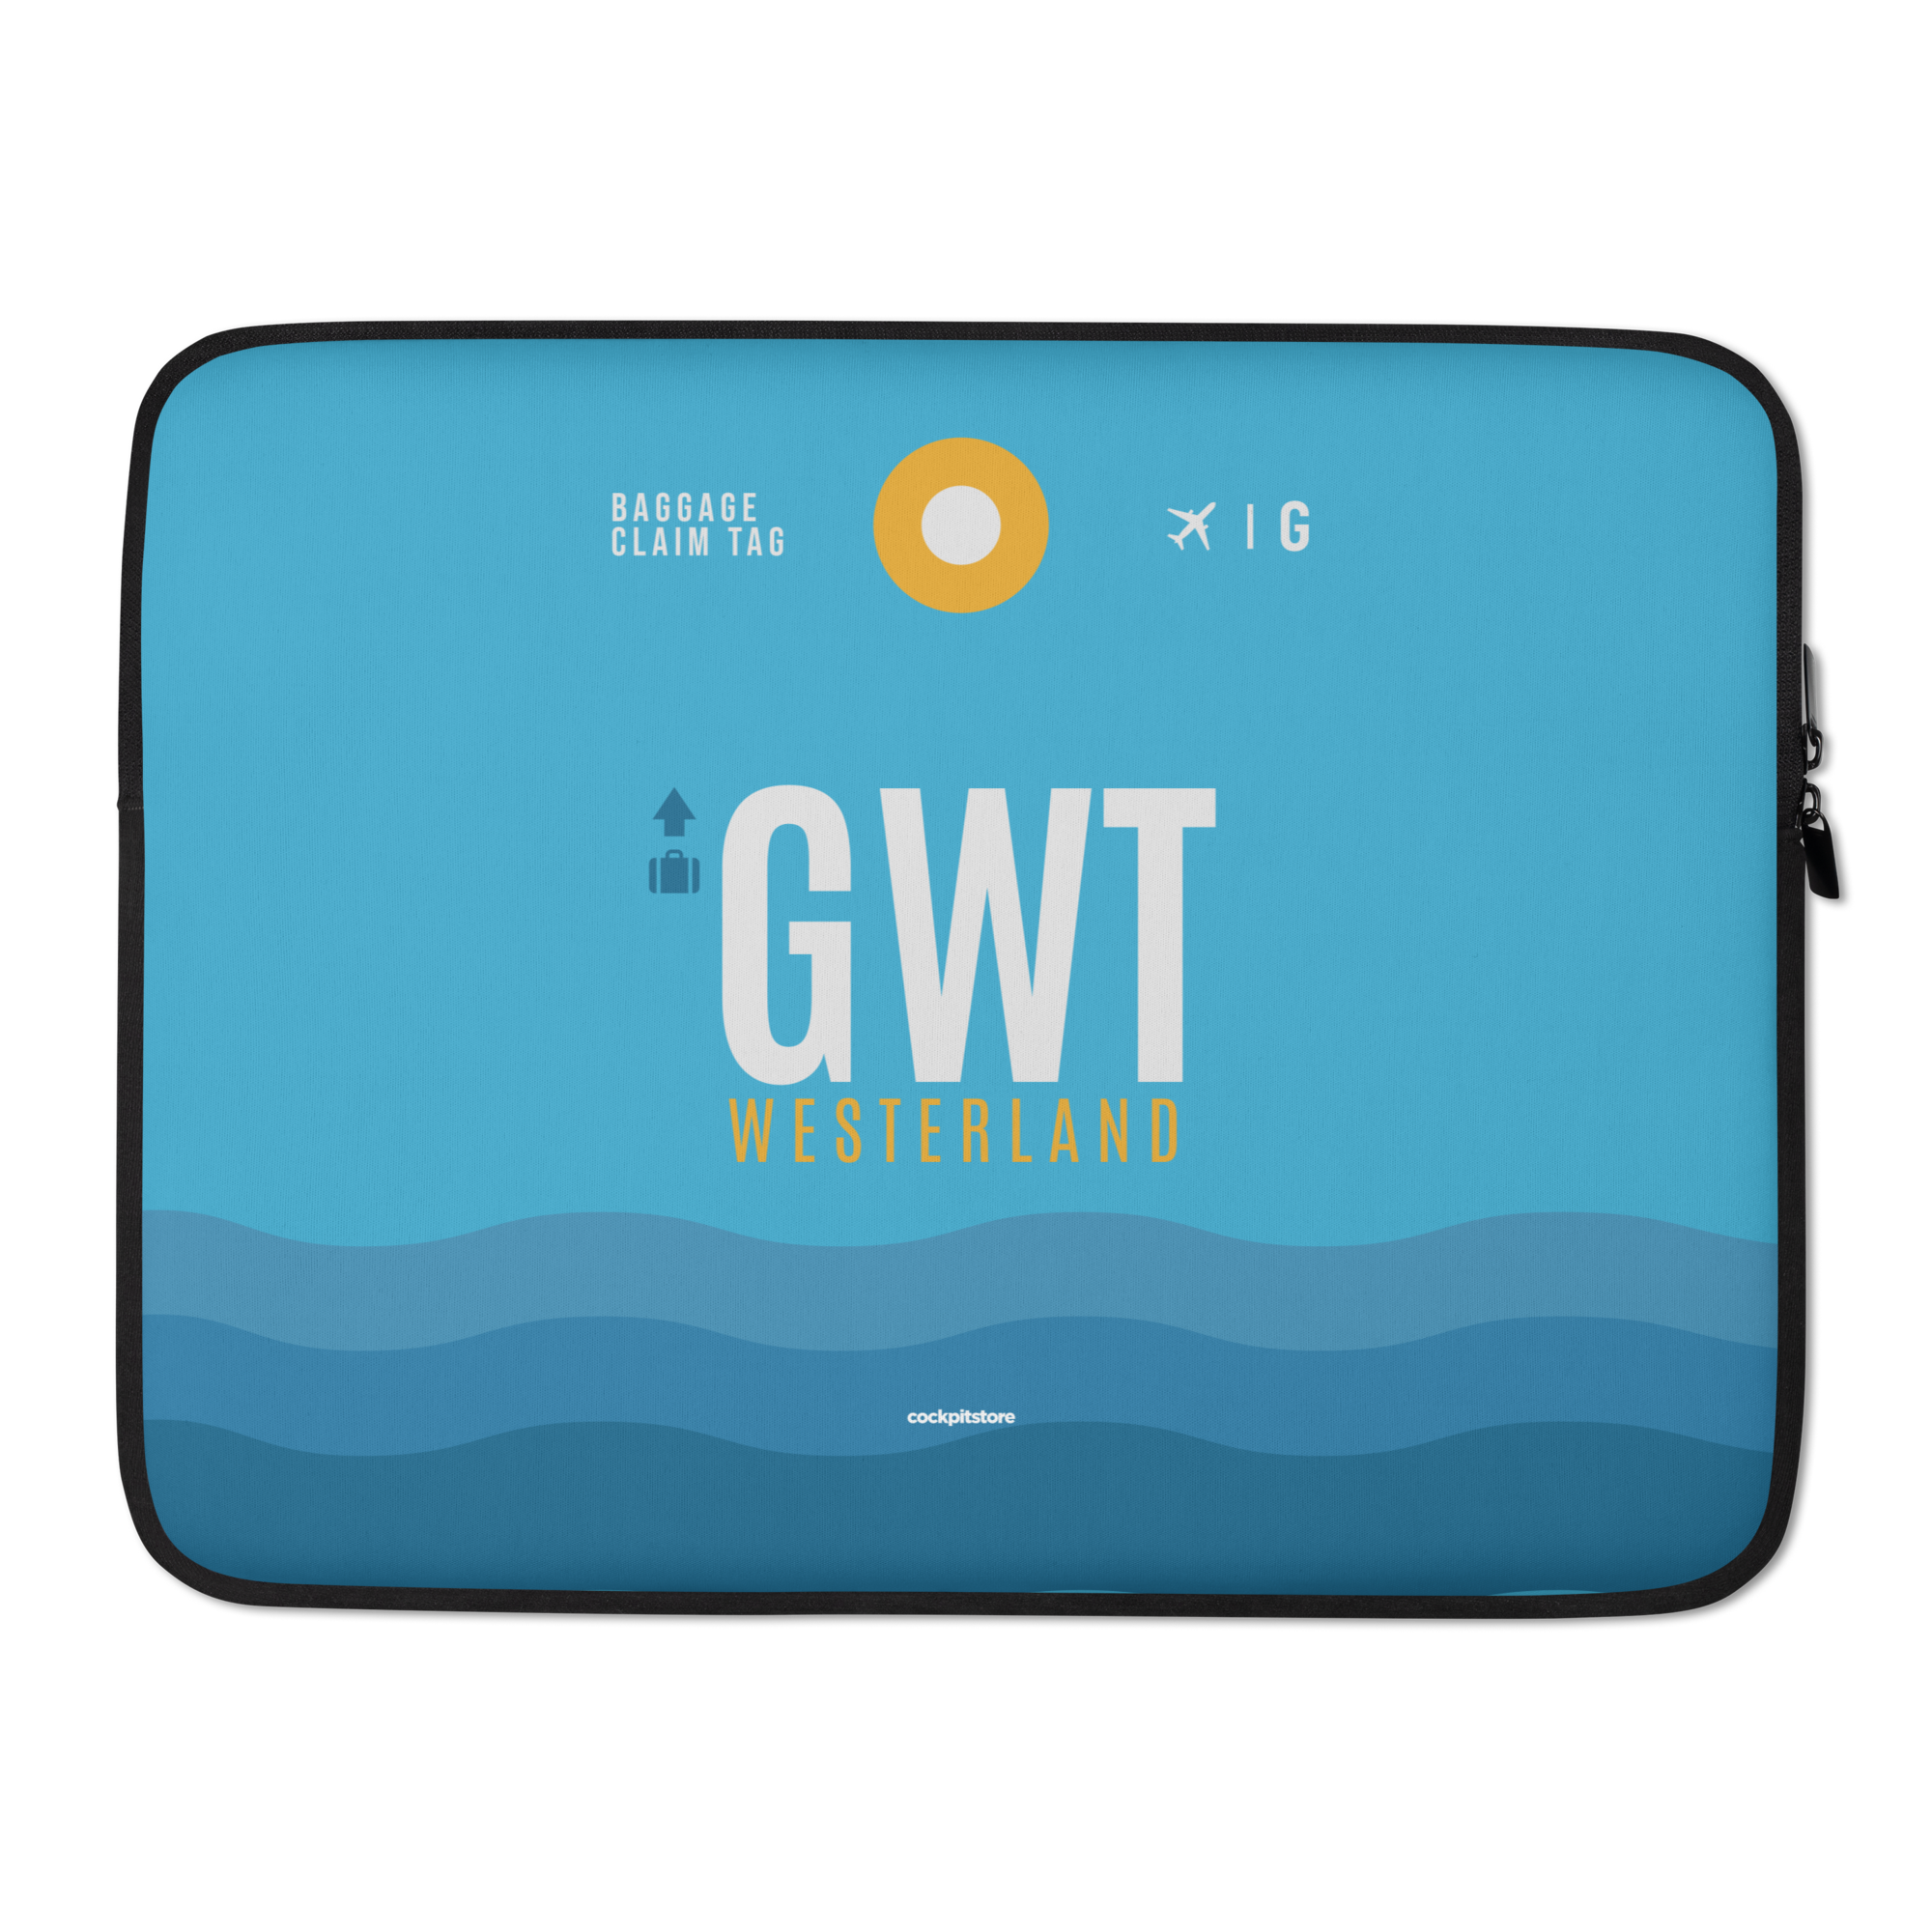 GWT - Sylt Laptop Sleeve Tasche 13in und 15in mit Flughafencode